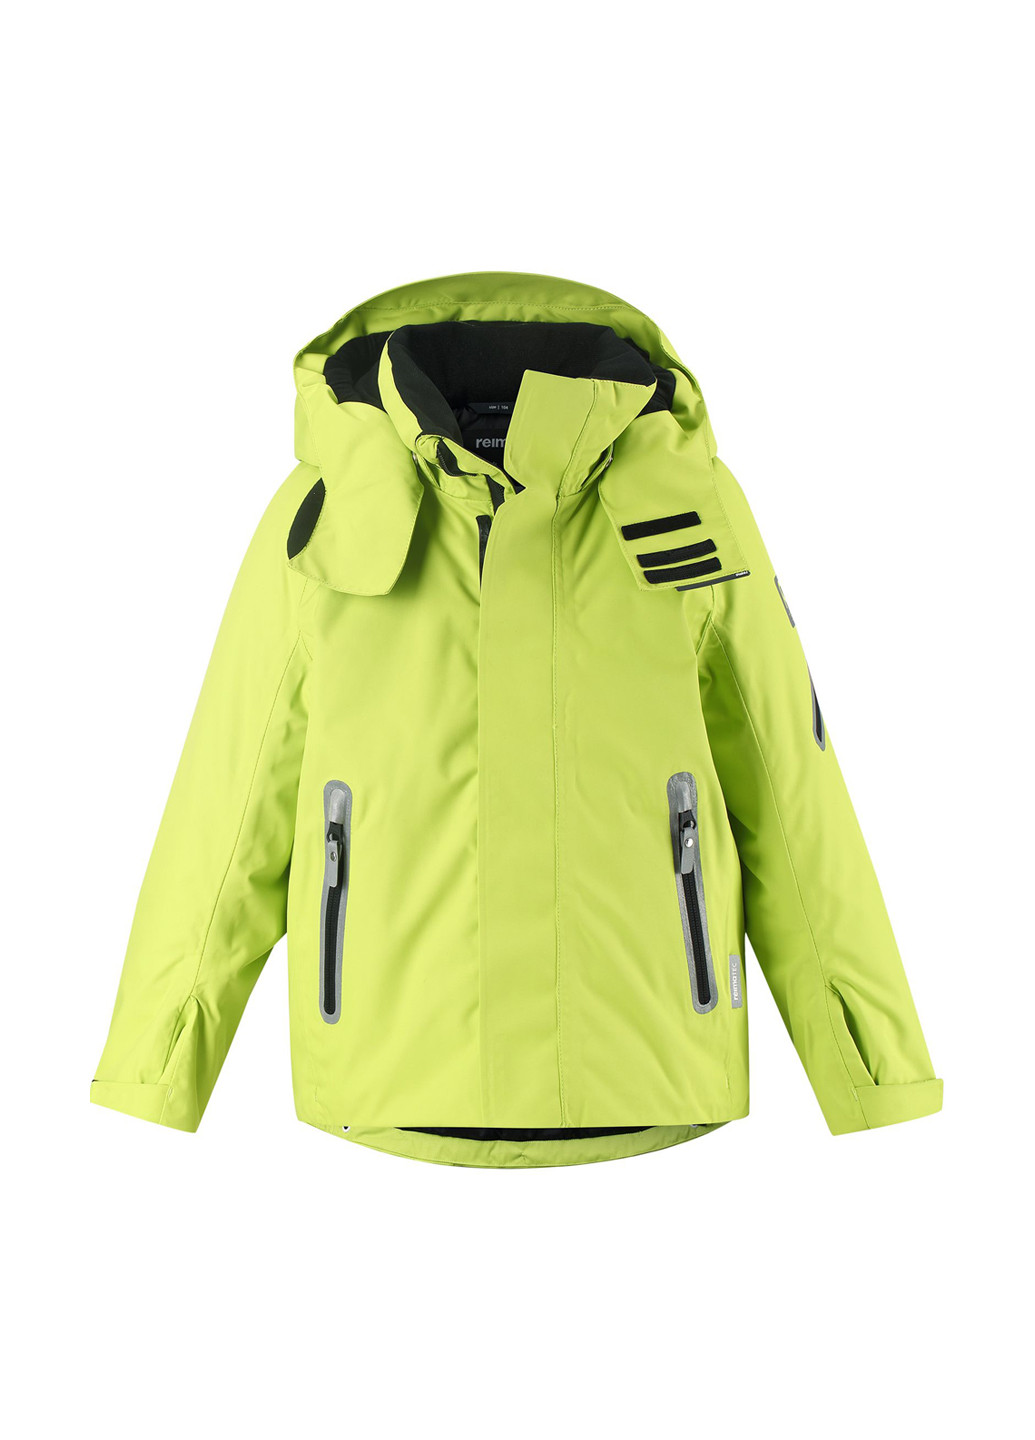 Салатовая зимняя куртка лыжная Reima Reimatec Regor